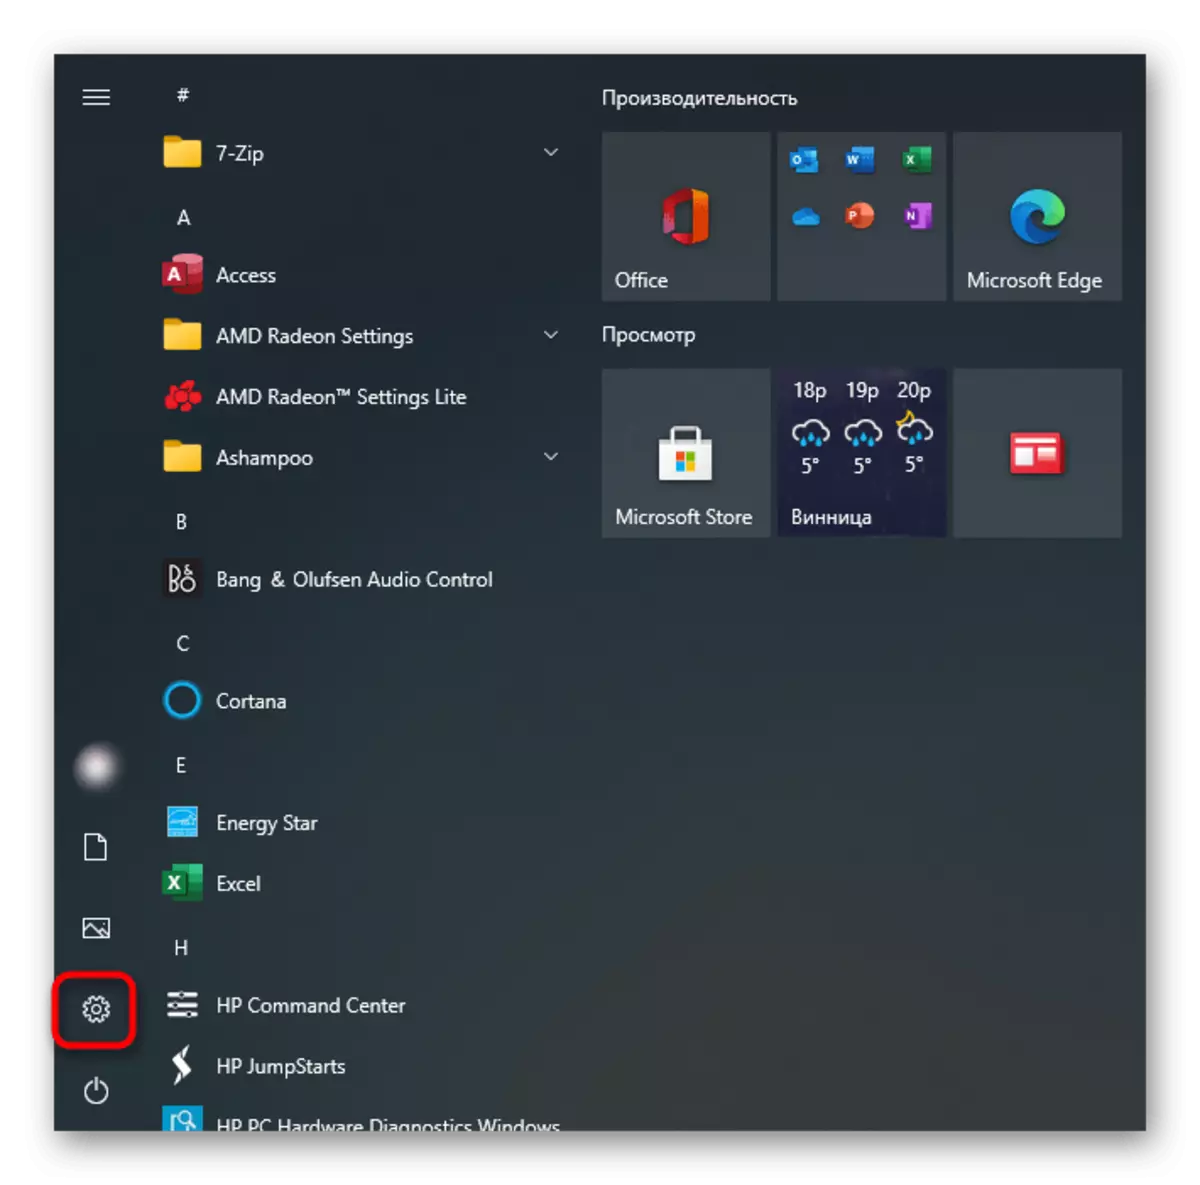 Chuyển sang tham số để bật Touchpad trên máy tính xách tay HP với Windows 10